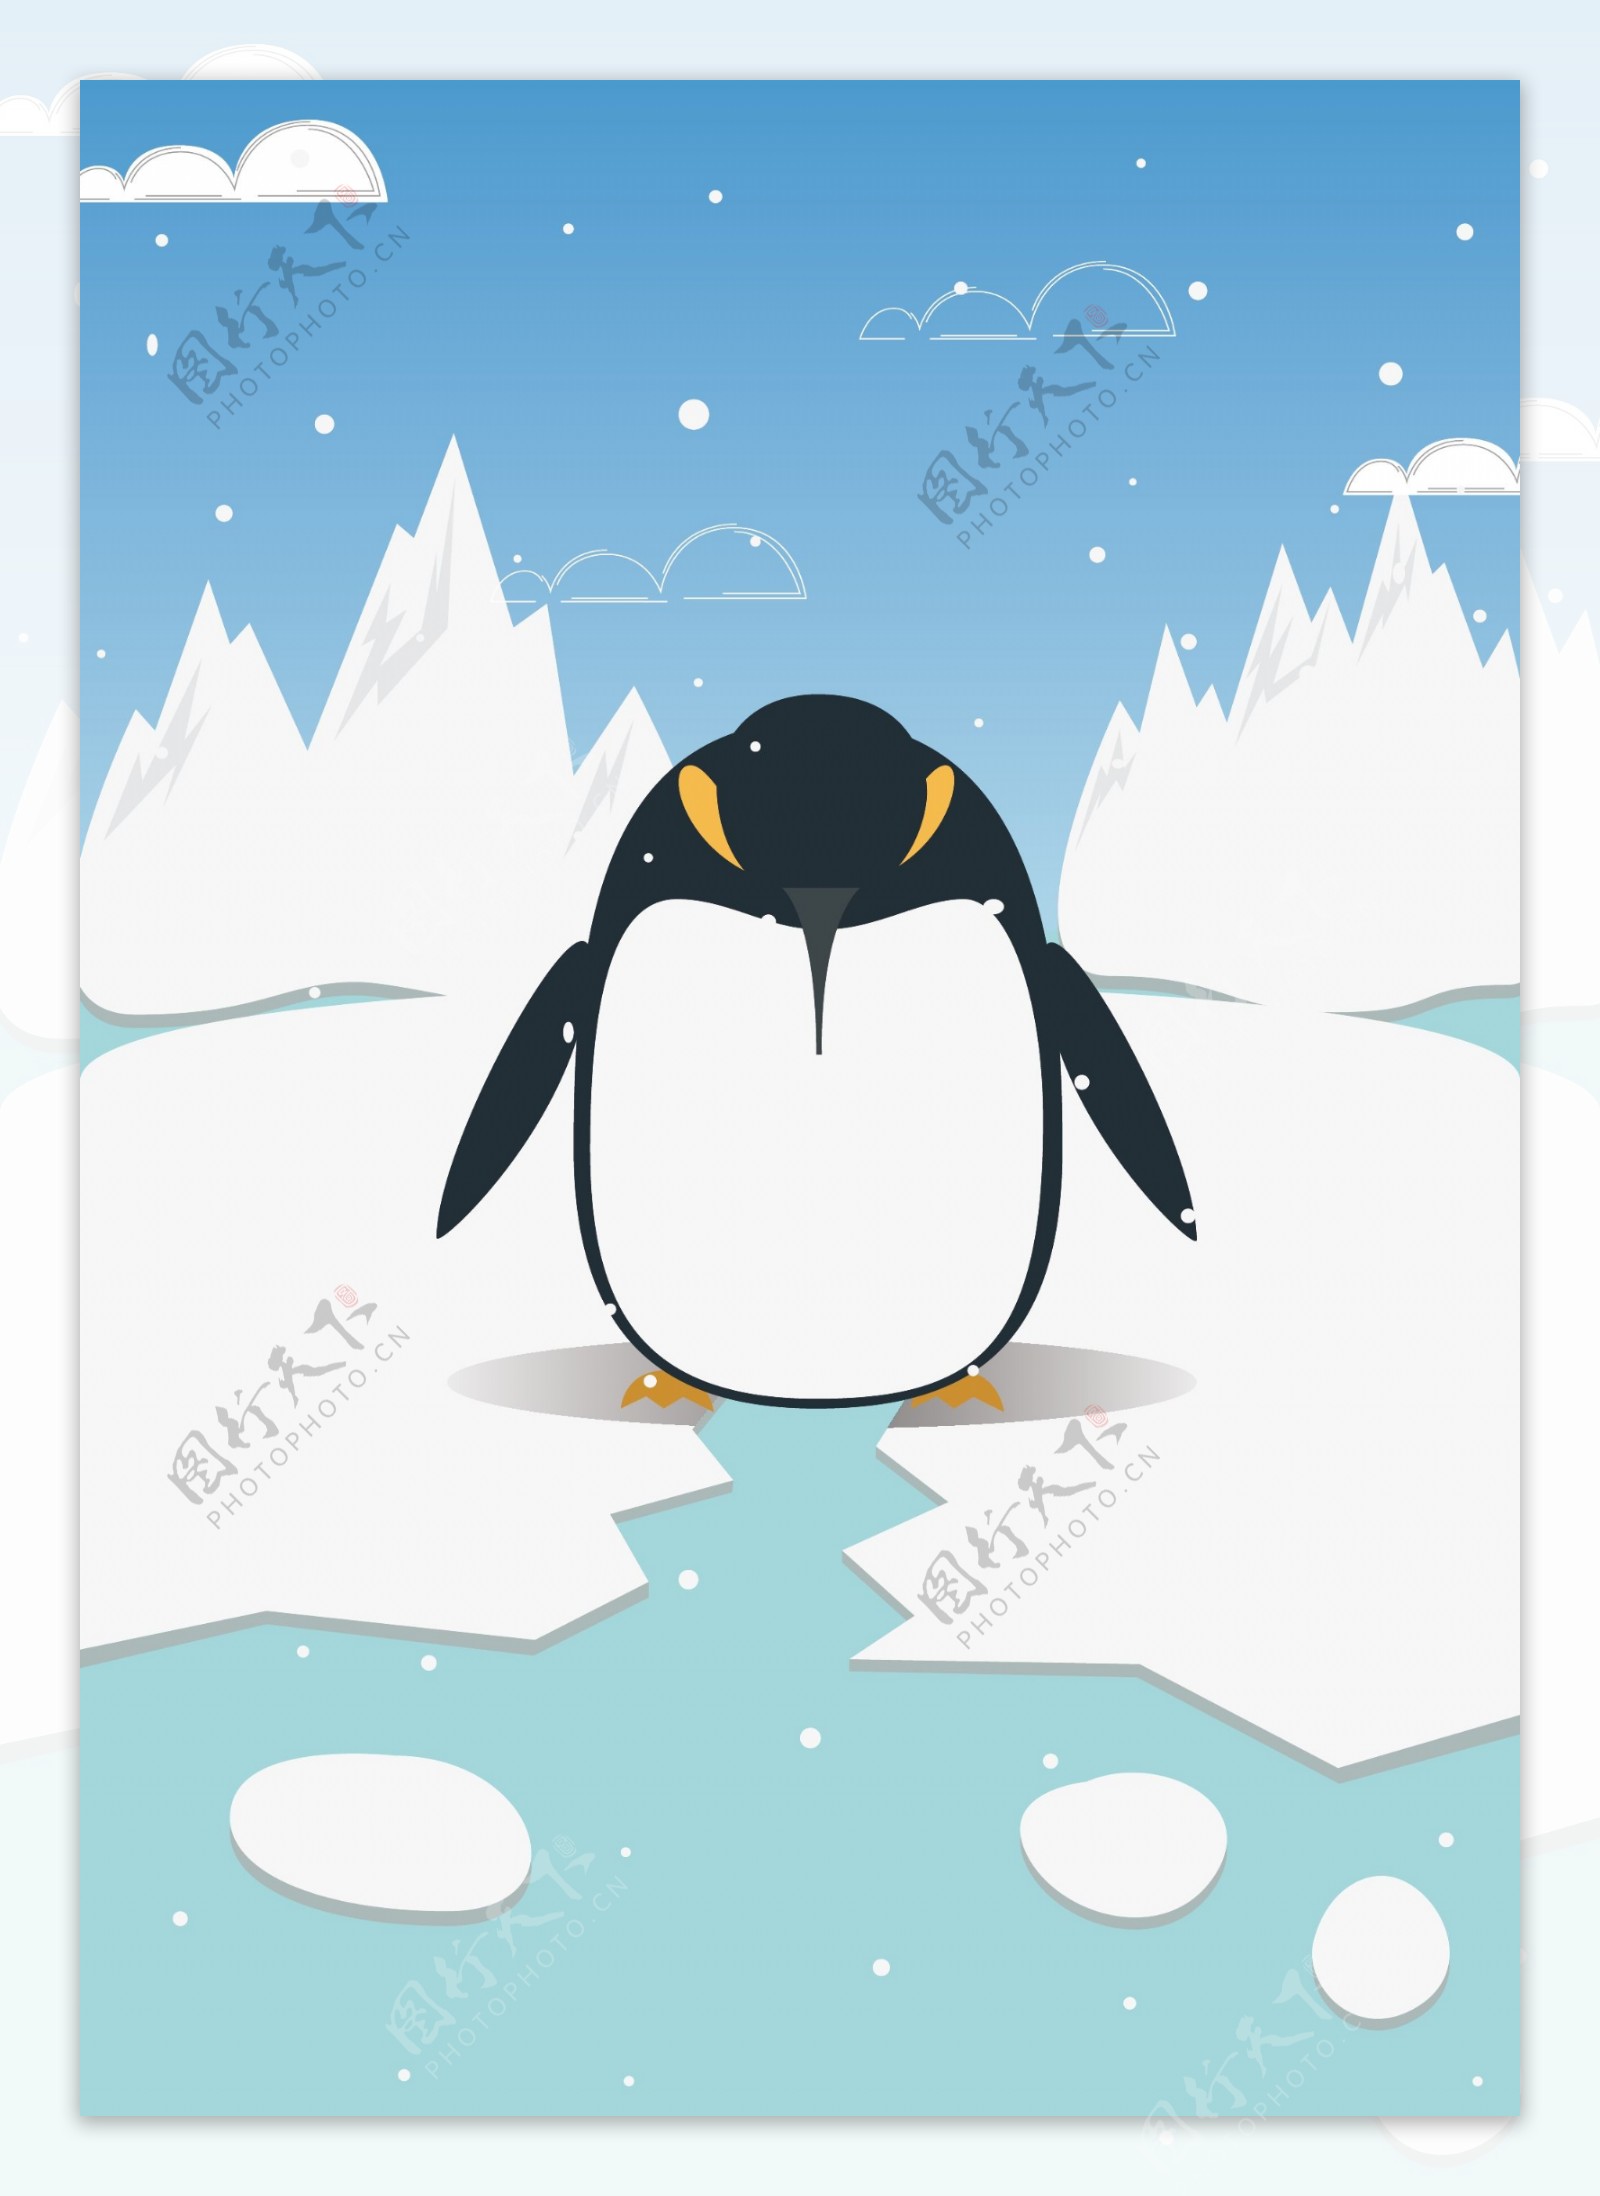 自然印记趋势南极企鹅原创插画小清新扁平